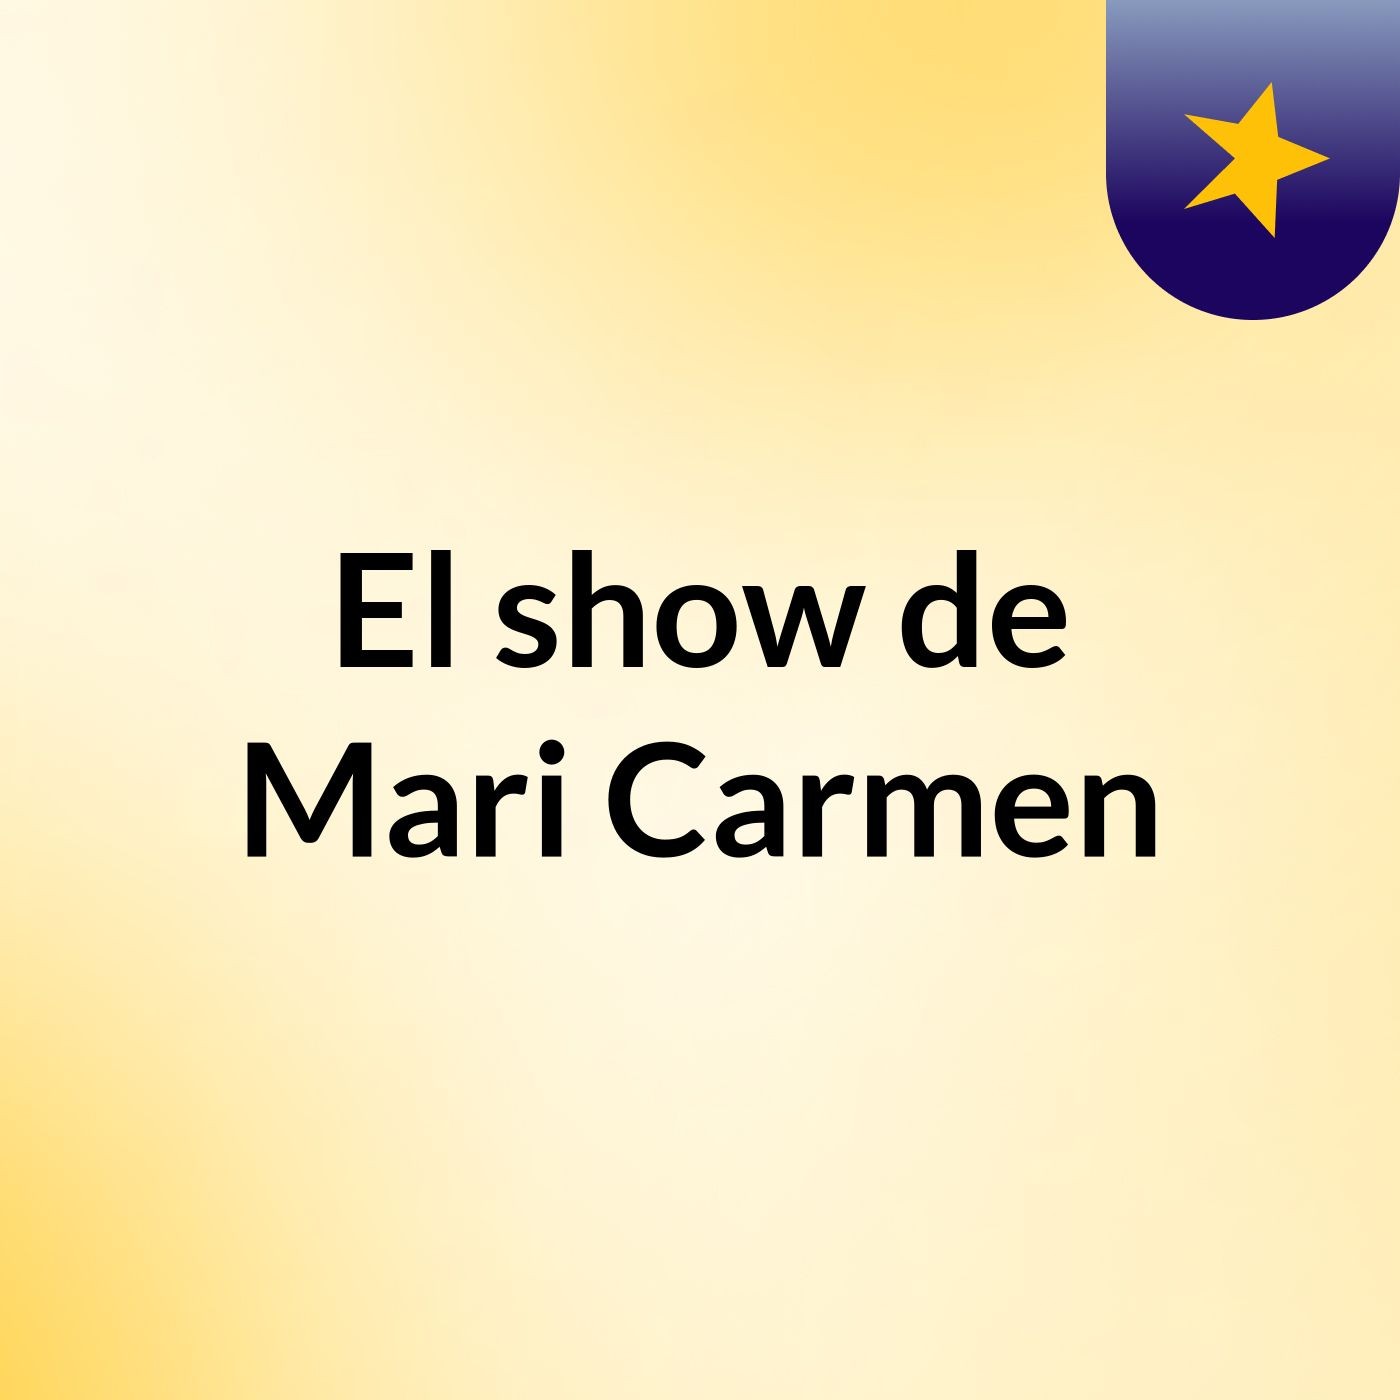 El show de Mari Carmen